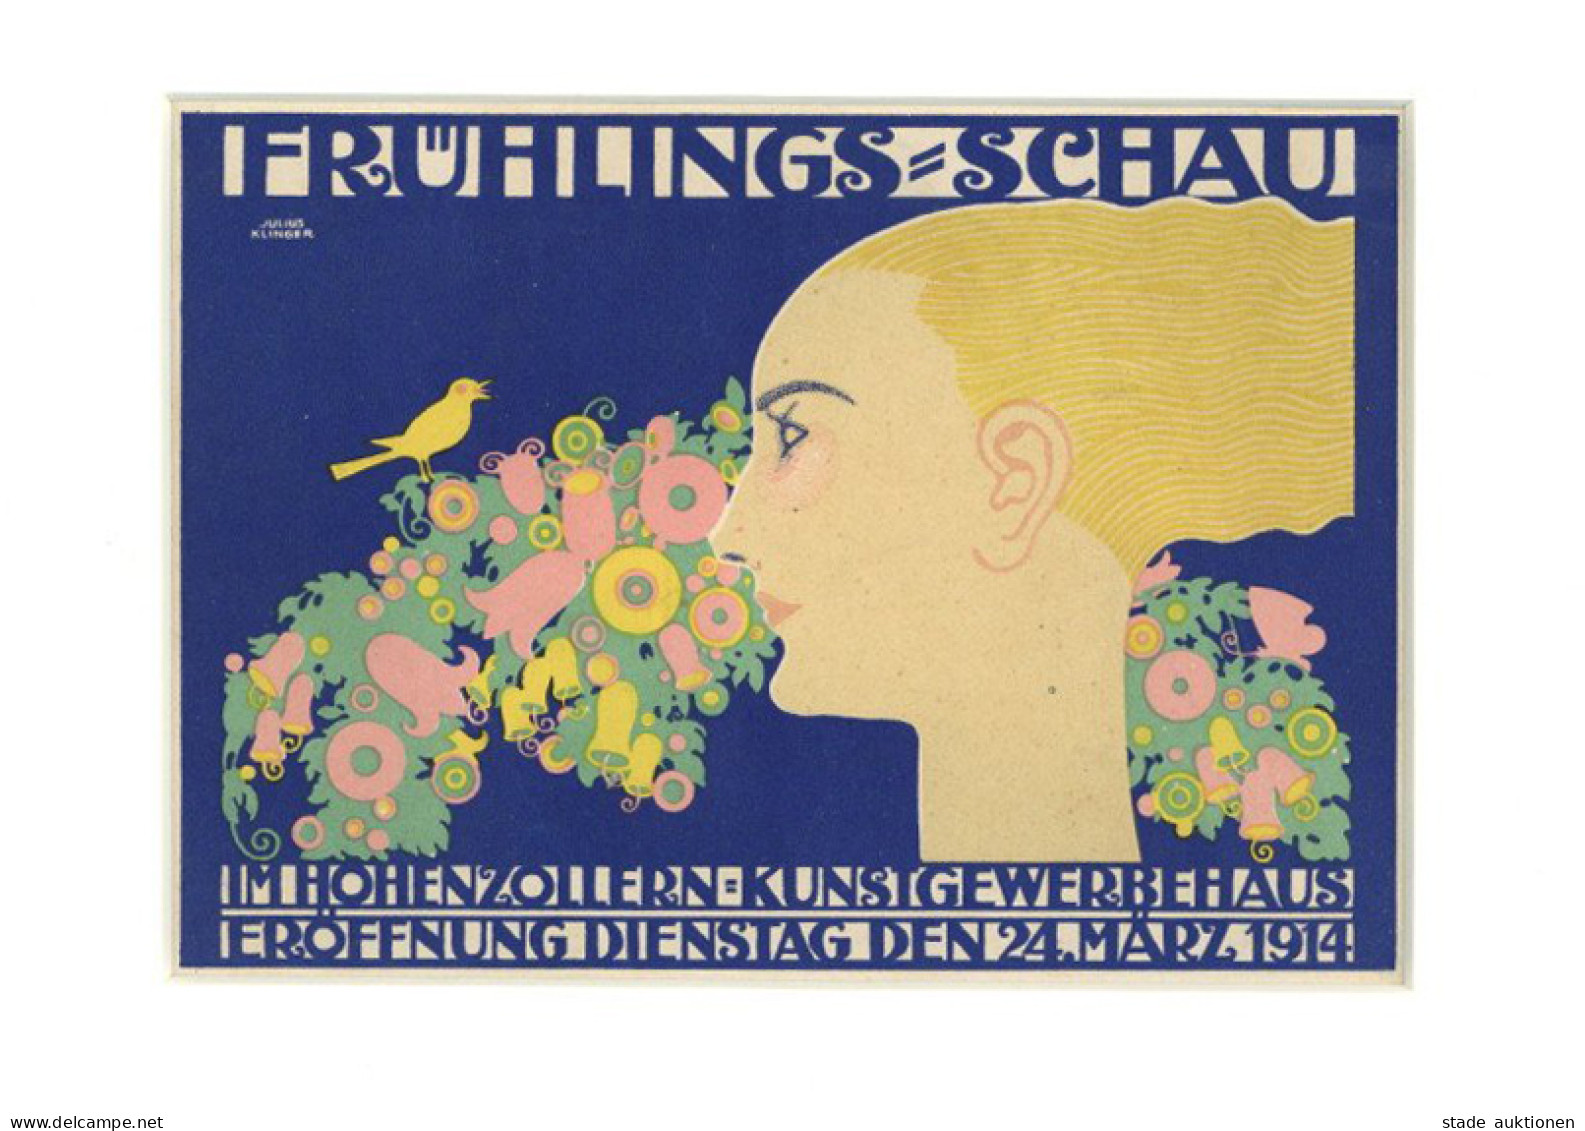 Werbung Kleinplakat Frühlings-Schau Im Hohenzollern Kunstgewerbehaus 24. März 1914 I-II Publicite - Publicité